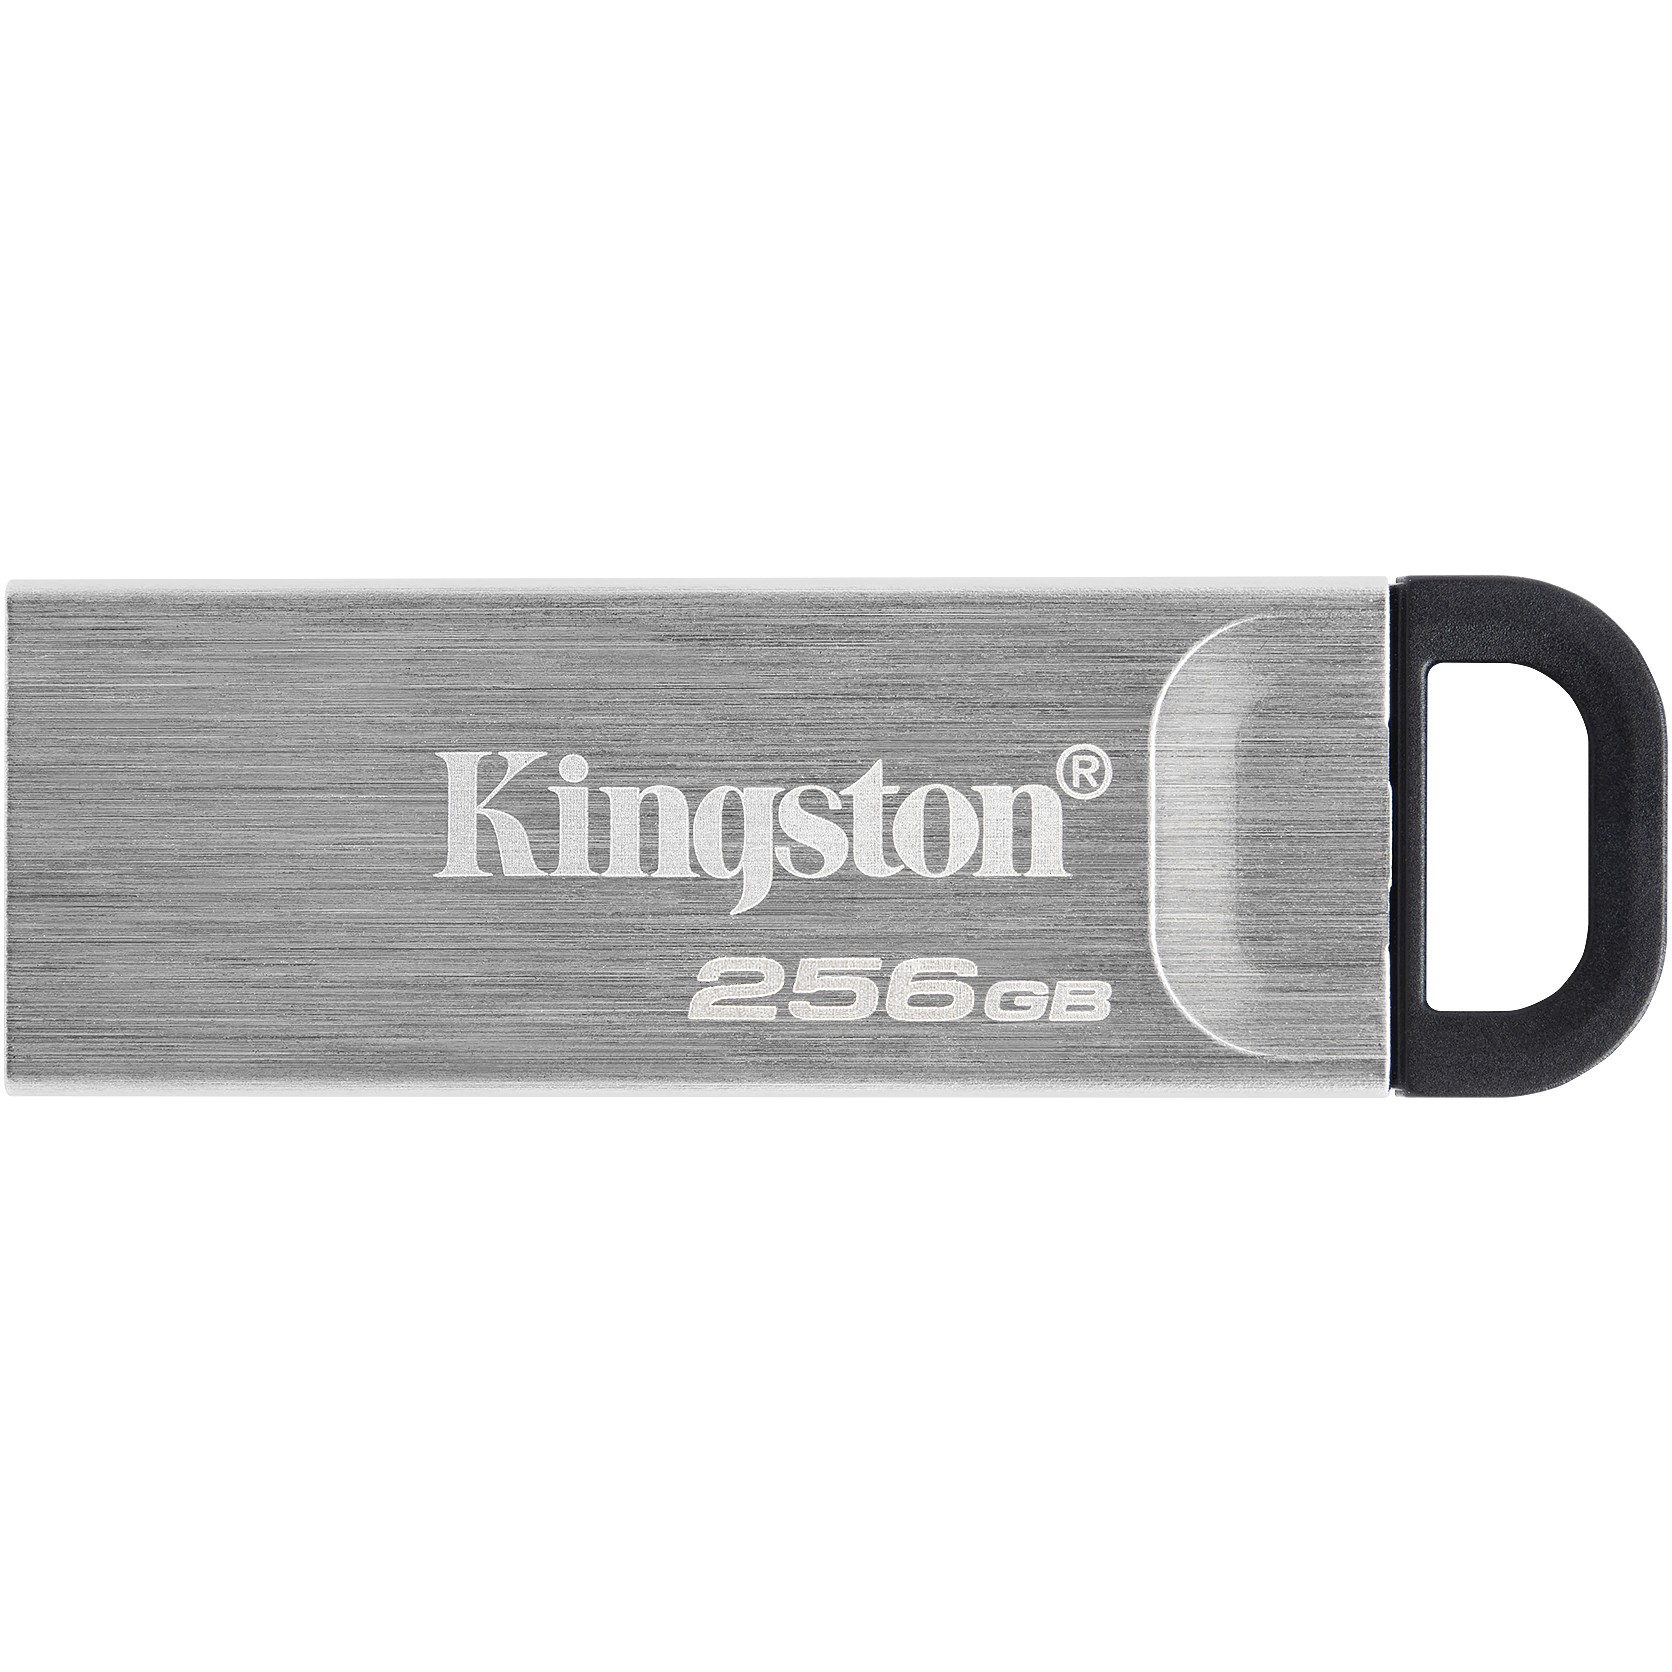 Kingston DTKN/256GB, USB-Stick, Kingston Technology USB  (BILD1)